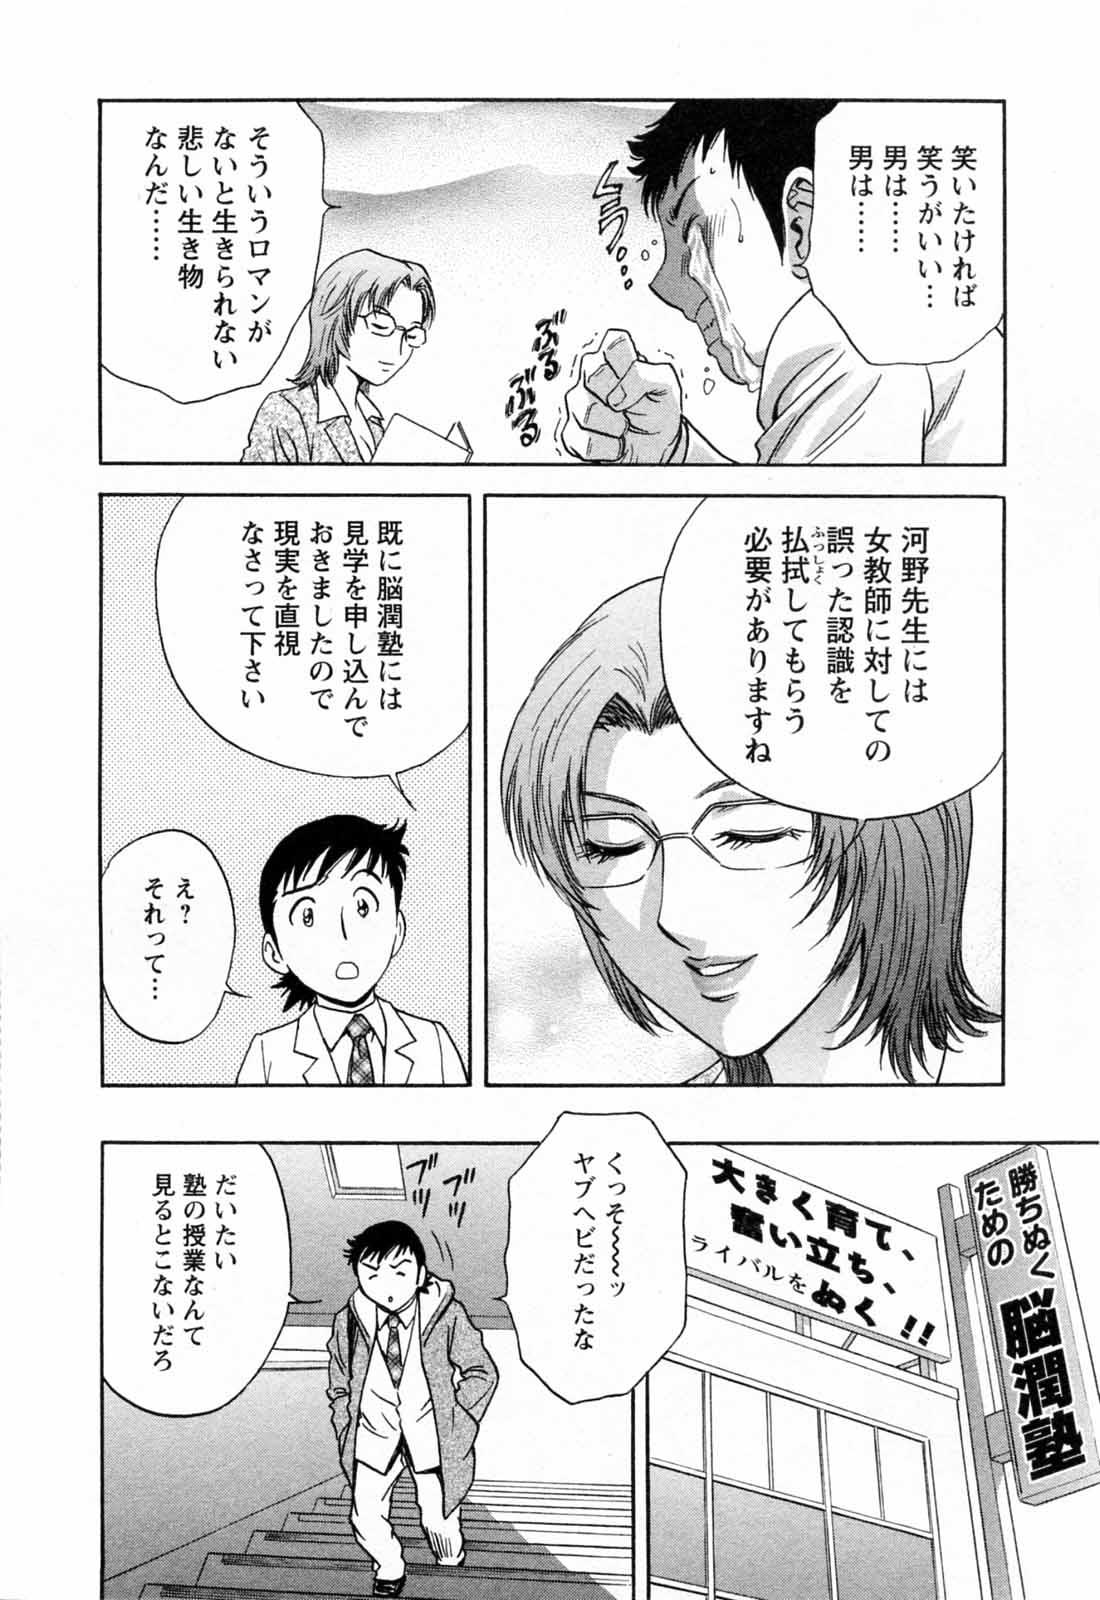 [Hidemaru] Mo-Retsu! Boin Sensei (Boing Boing Teacher) Vol.5 13